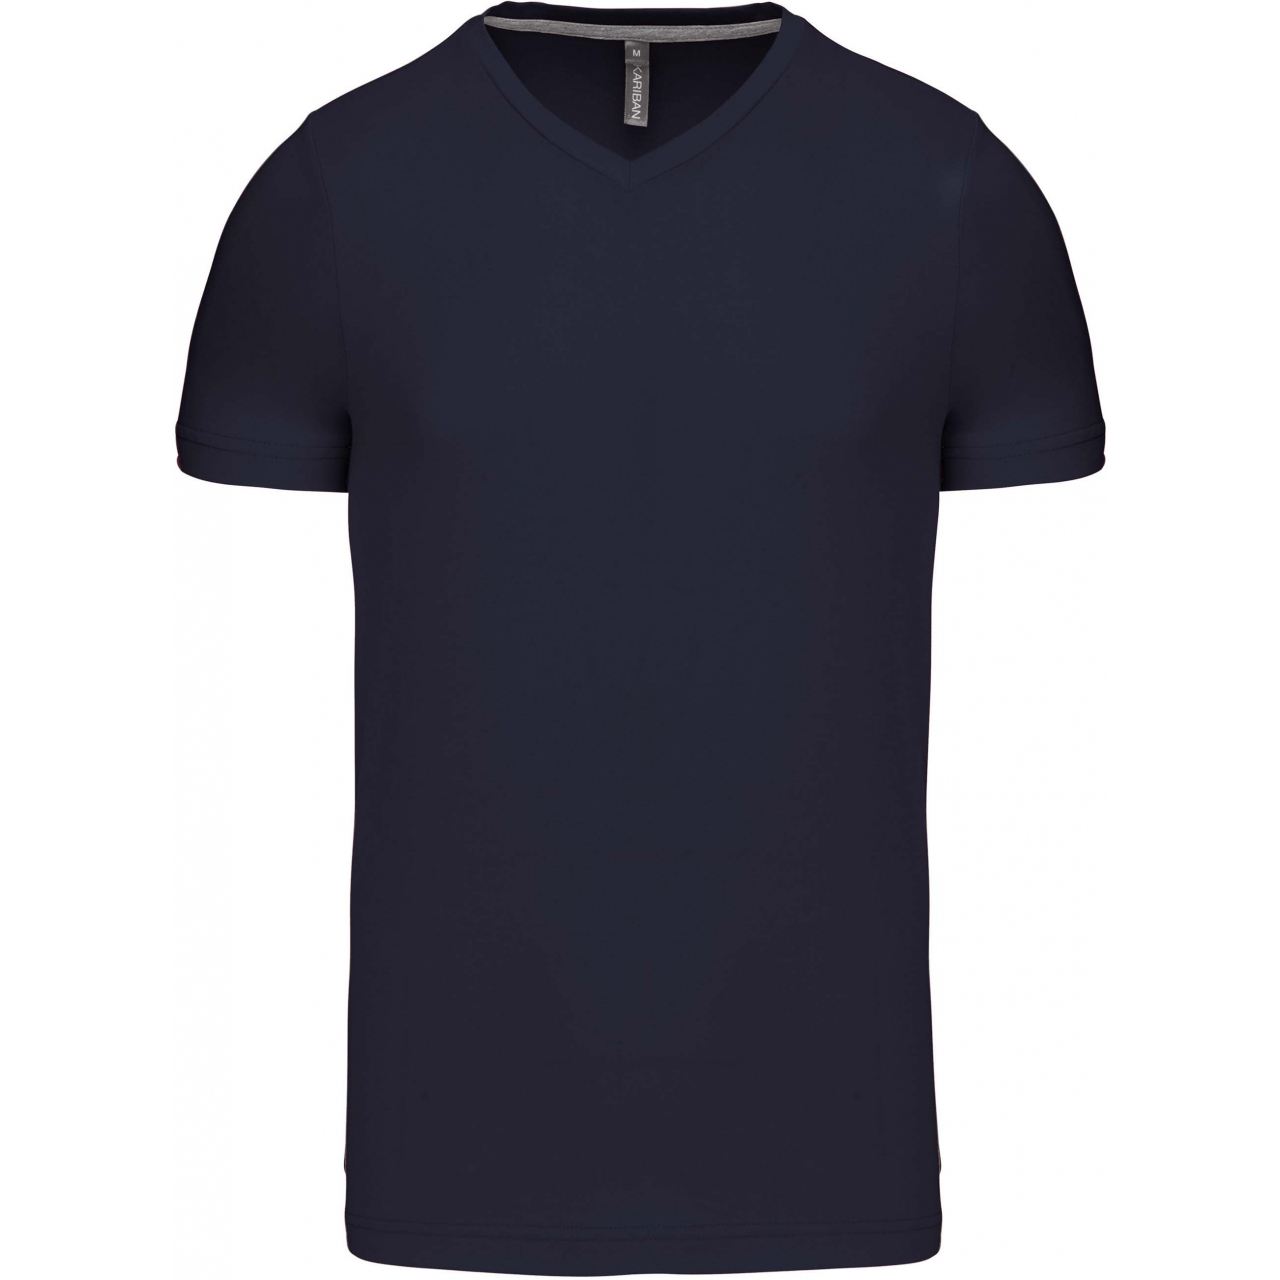 Pánské tričko Kariban krátký rukáv V-neck - navy, S